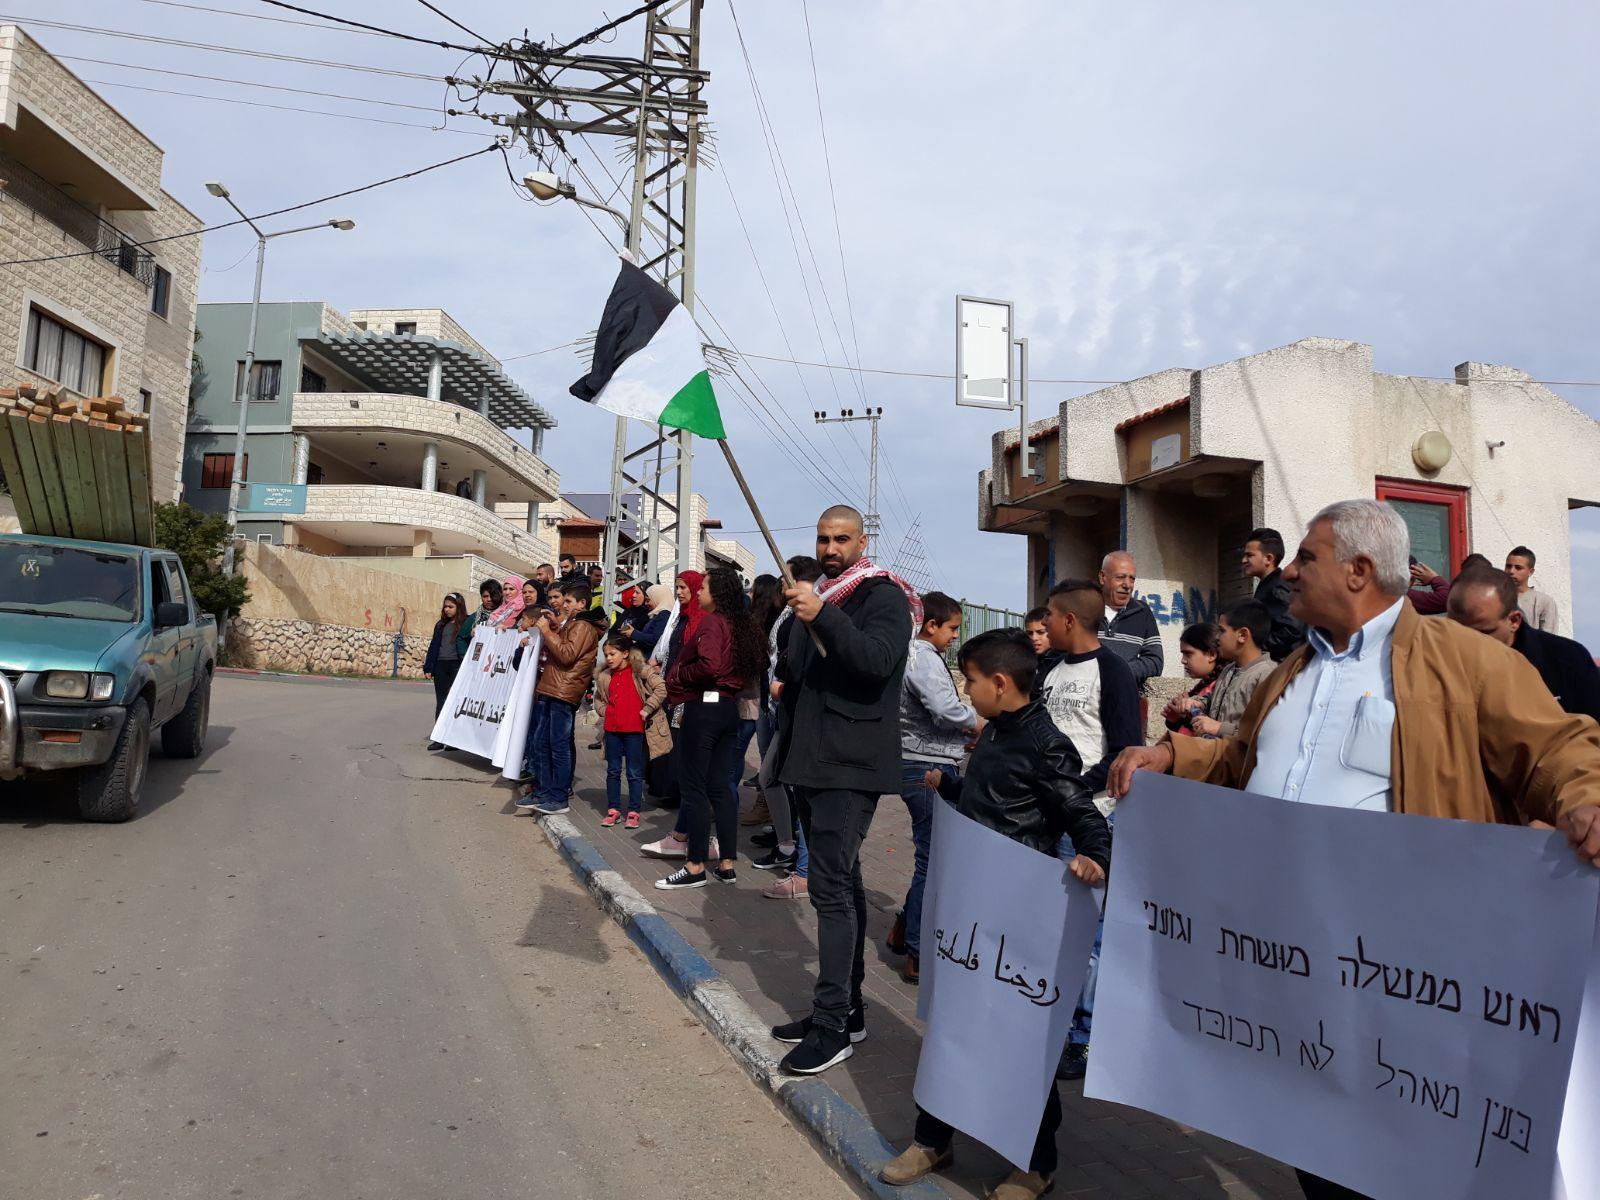  بركة: يتحتّم على فلسطينيي الداخل استقبال نتنياهو   بالصرامي على وجهه   2017122812295769